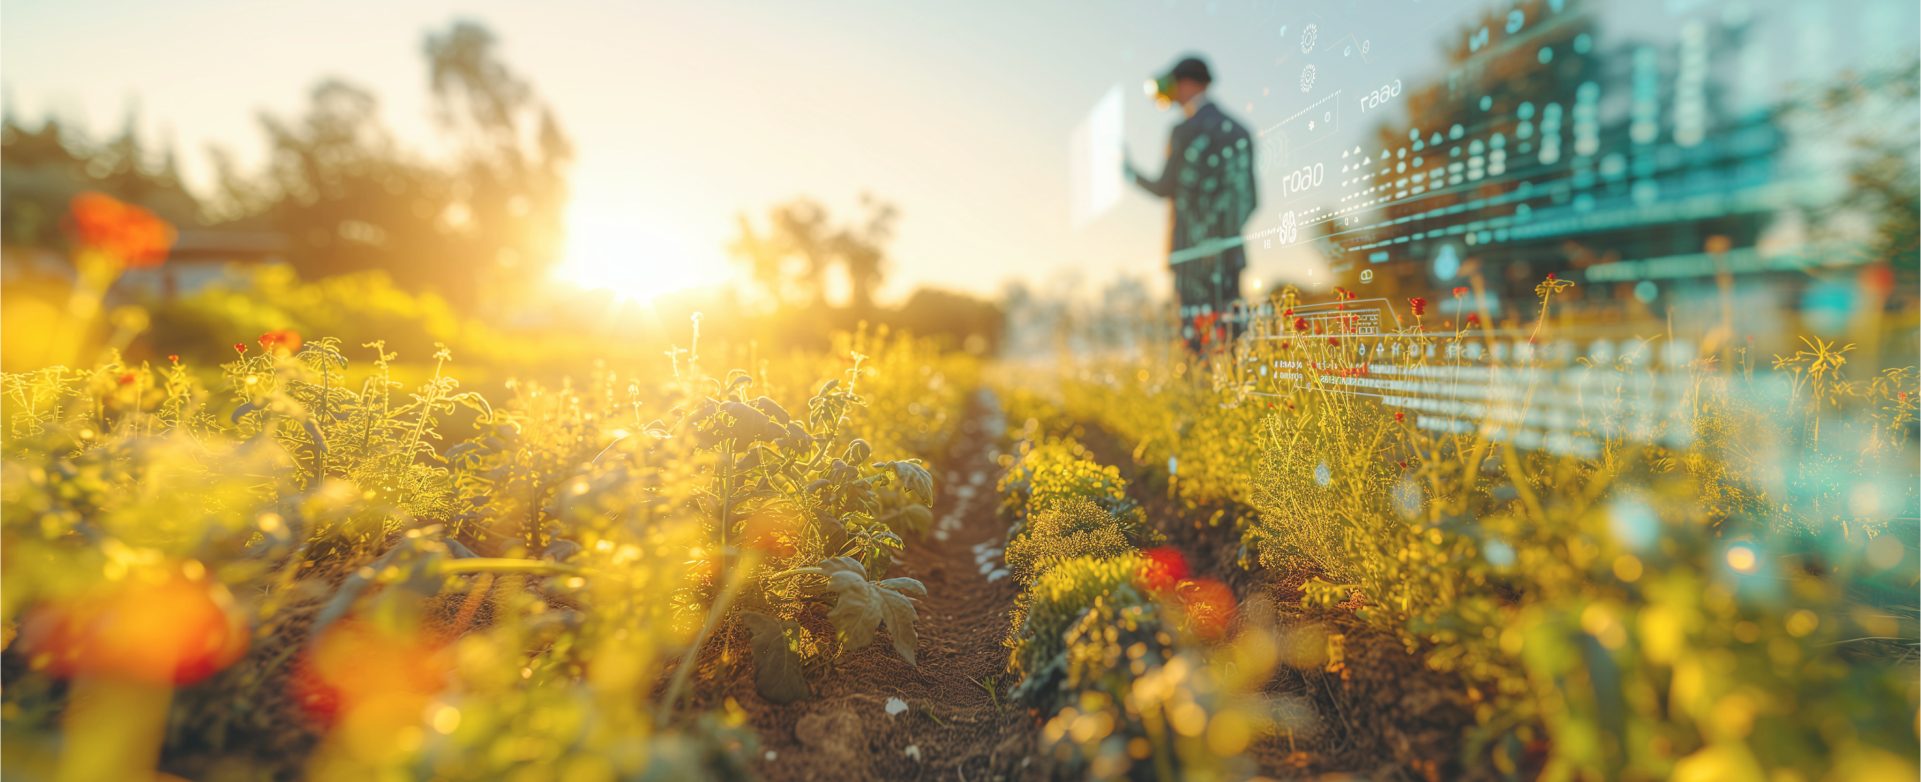 Das Bild zeigt eine landwirtschaftliche Nutzfläche bei Sonnenuntergang, auf der im Hintergrund eine Person mit einem digitalen Gerät arbeitet, während im Vordergrund Pflanzen und digitale Zahlen und Diagramme zu sehen sind.